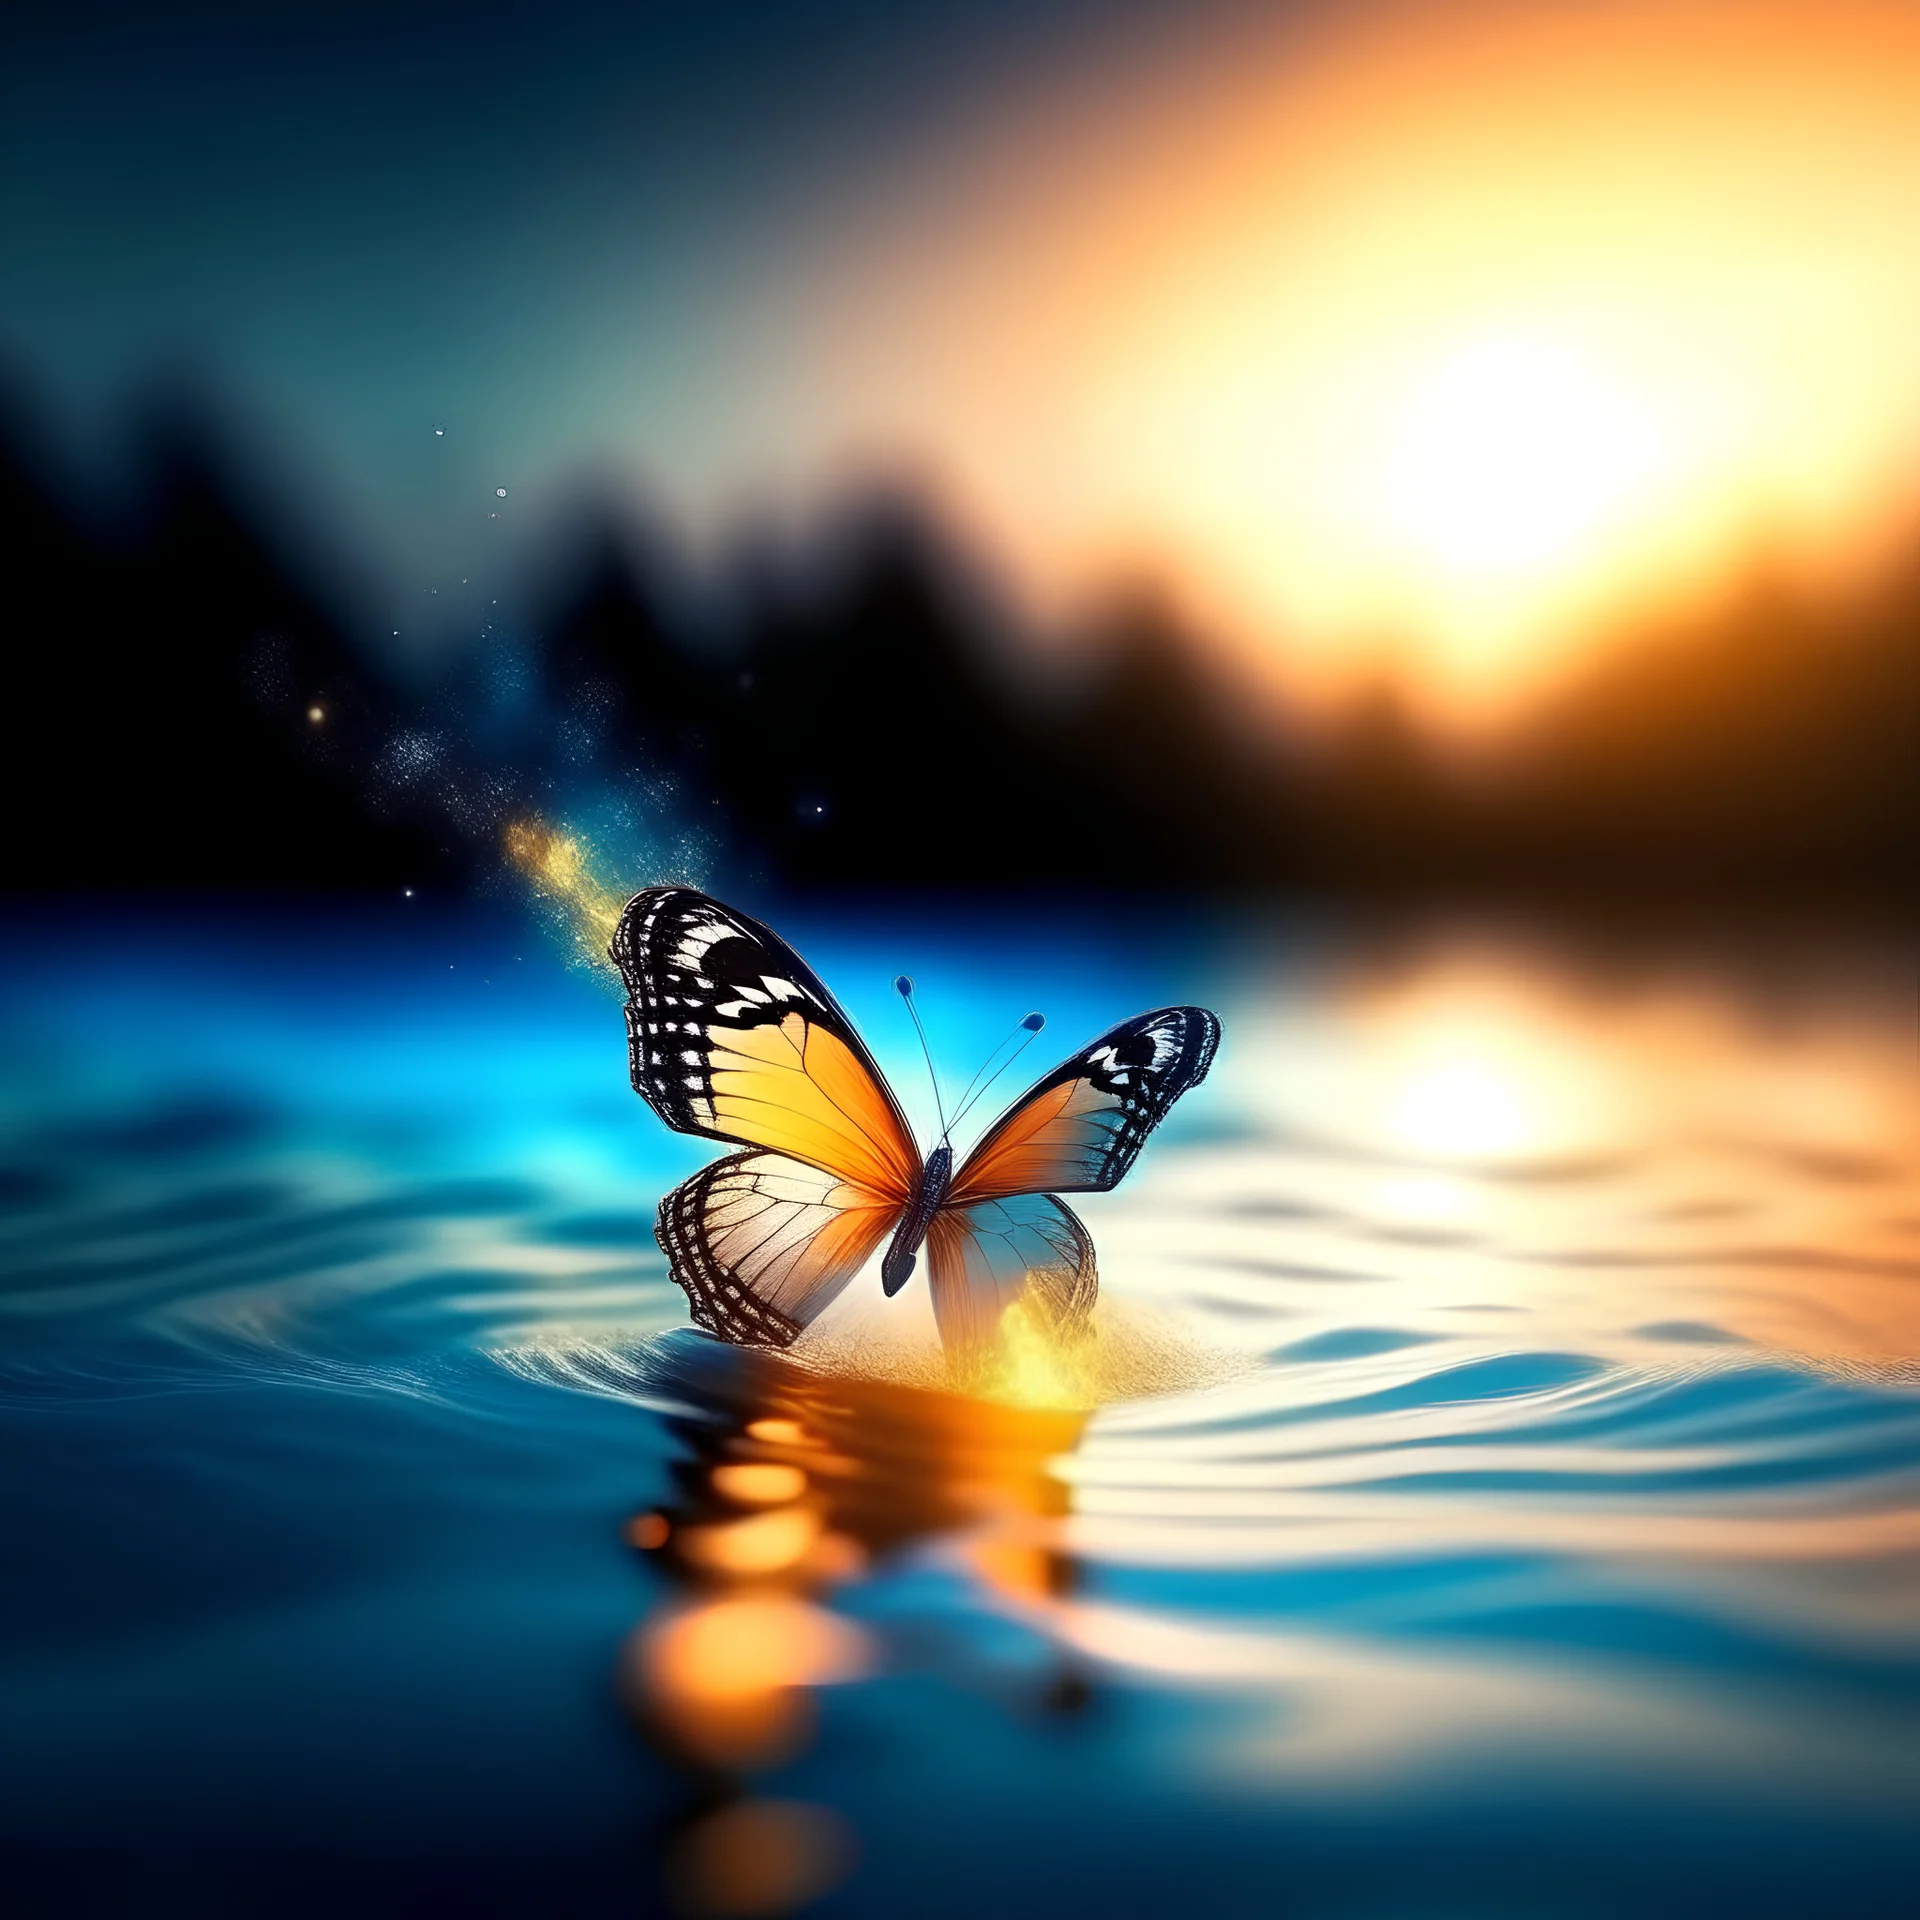 una mariposa, en primer plano, de colores pasteles volando en el mar con poderes de fuego en una ambiente de paz, con luz suave y en una atmosfera misteriosa